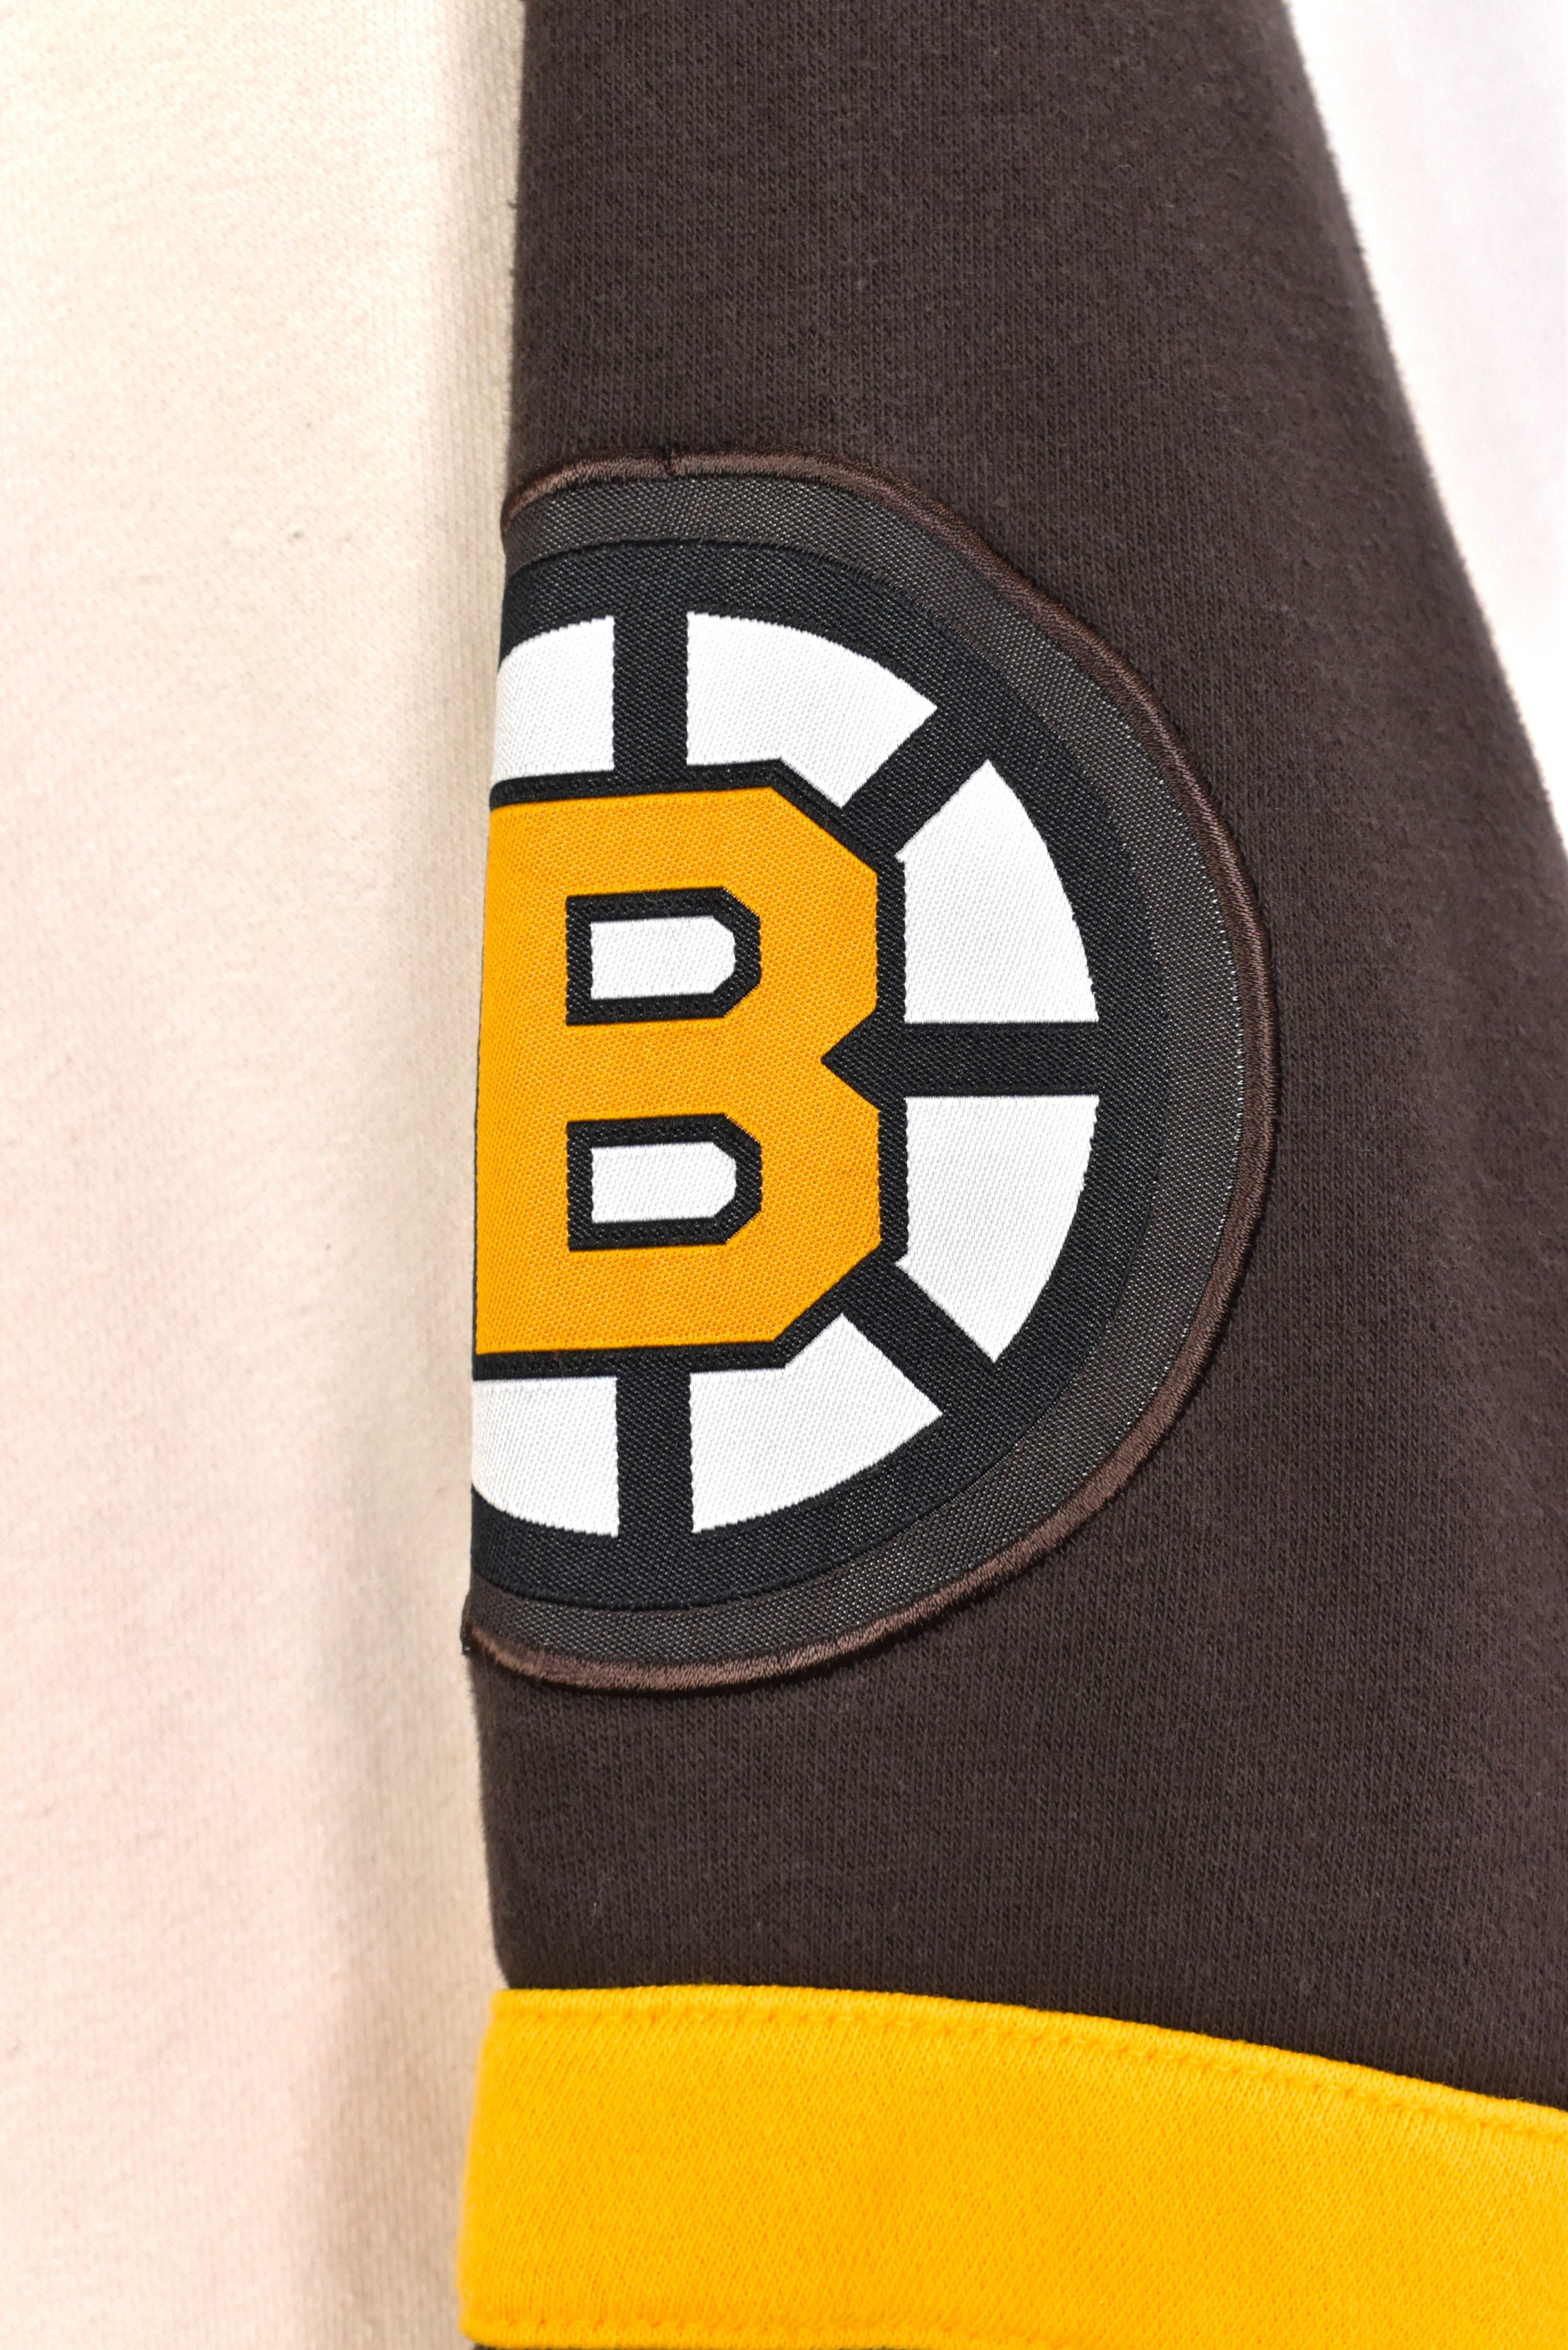 Vintage Boston Bruins hoodie, NHL ice hockey embroidered sweatshirt - large PRO SPORT